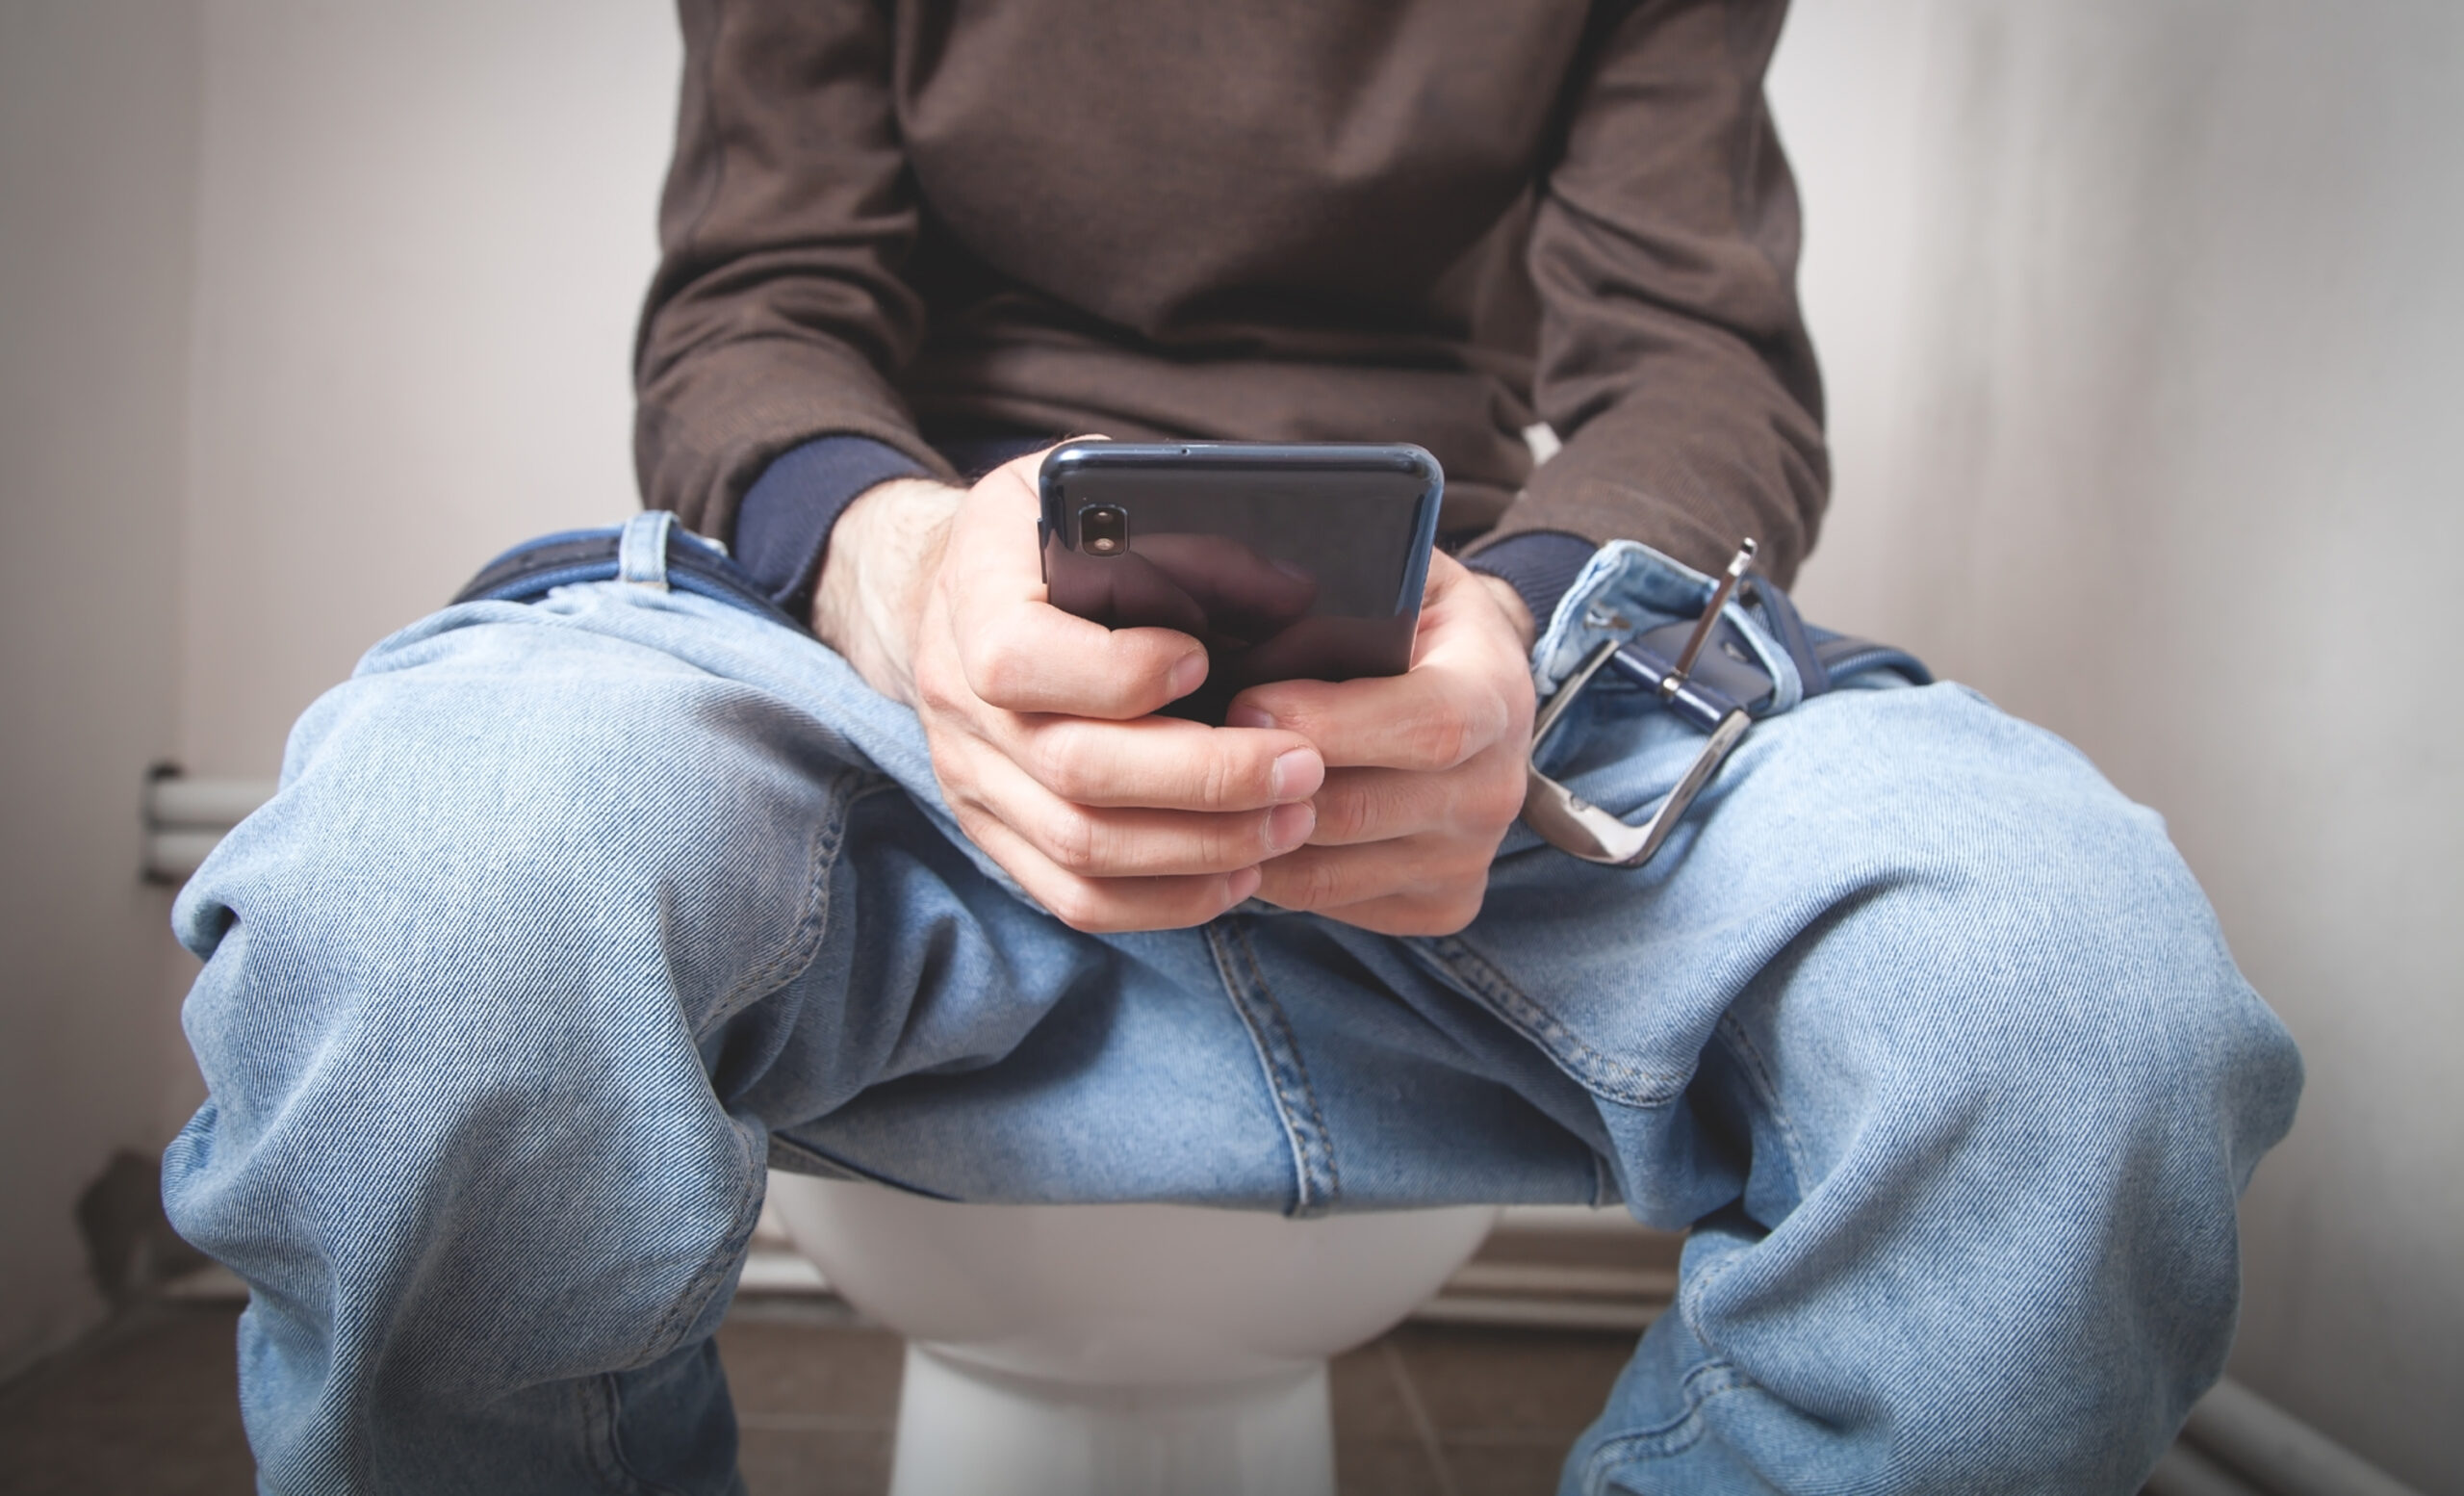 Usar o celular no banheiro pode causar hemorroidas, mas por que?